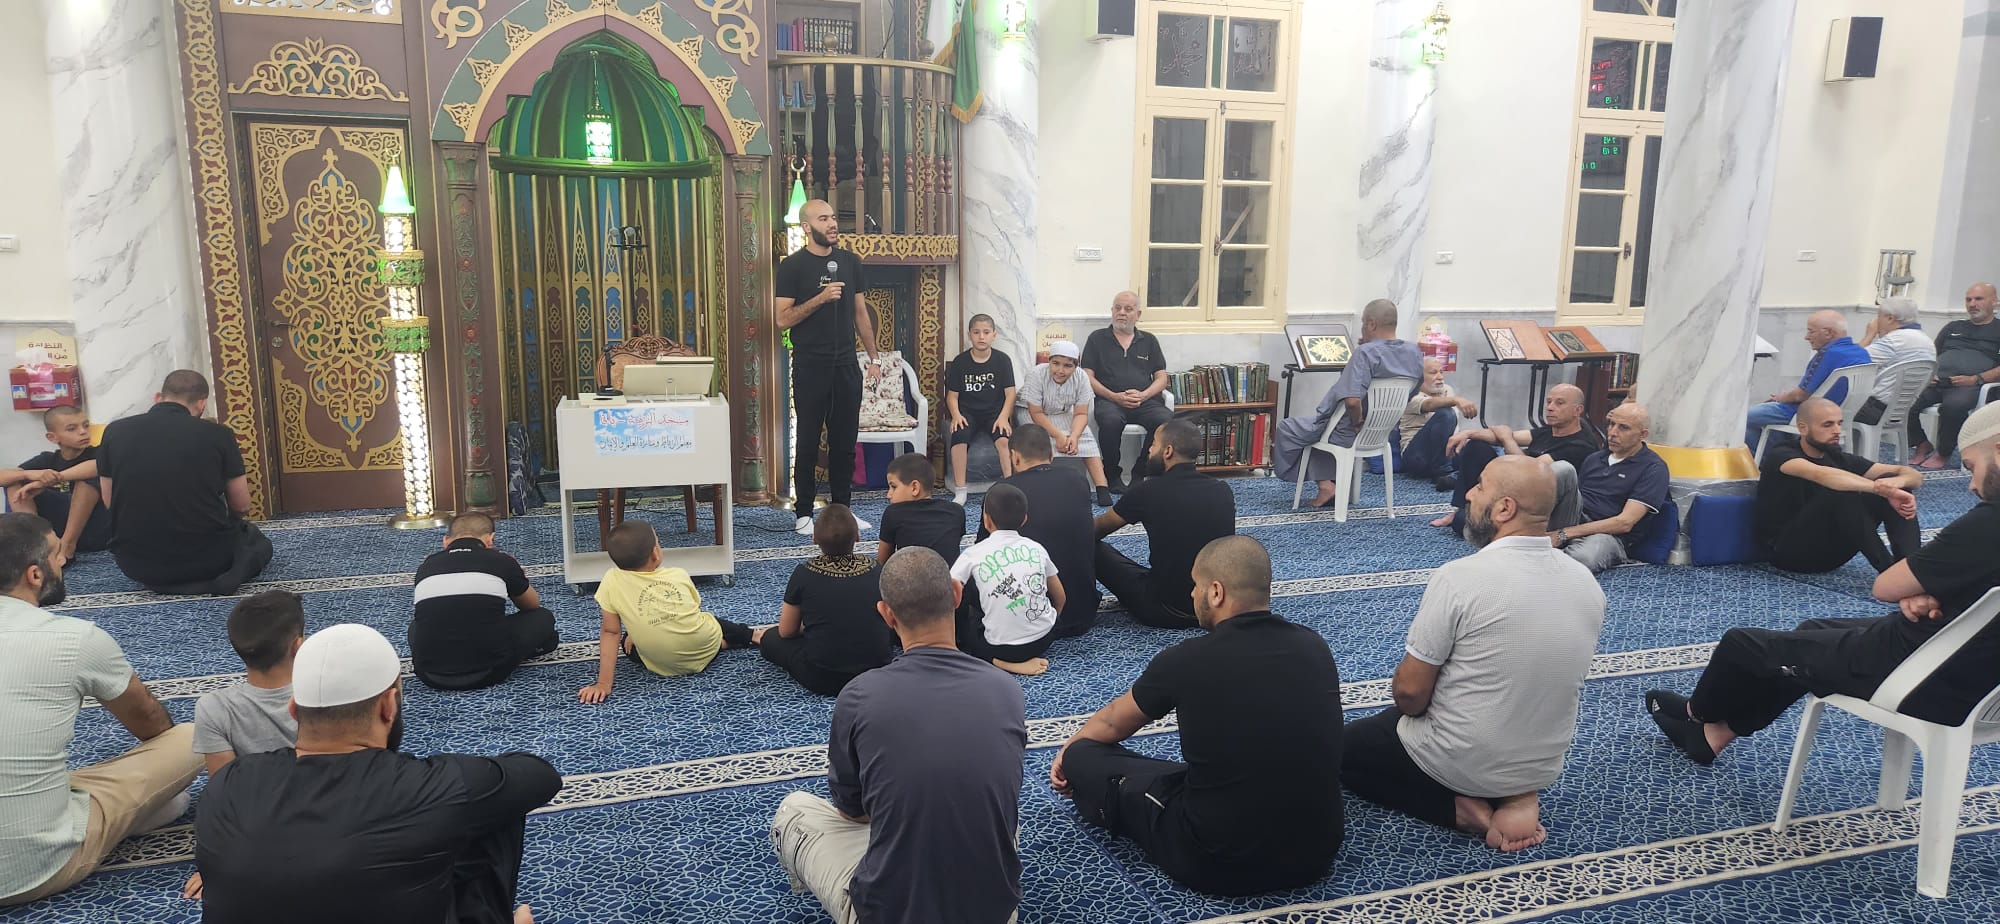 يافا: بالصور الأمسية الإيمانية الأسبوعية مجالس الإيمان في مسجد النزهة